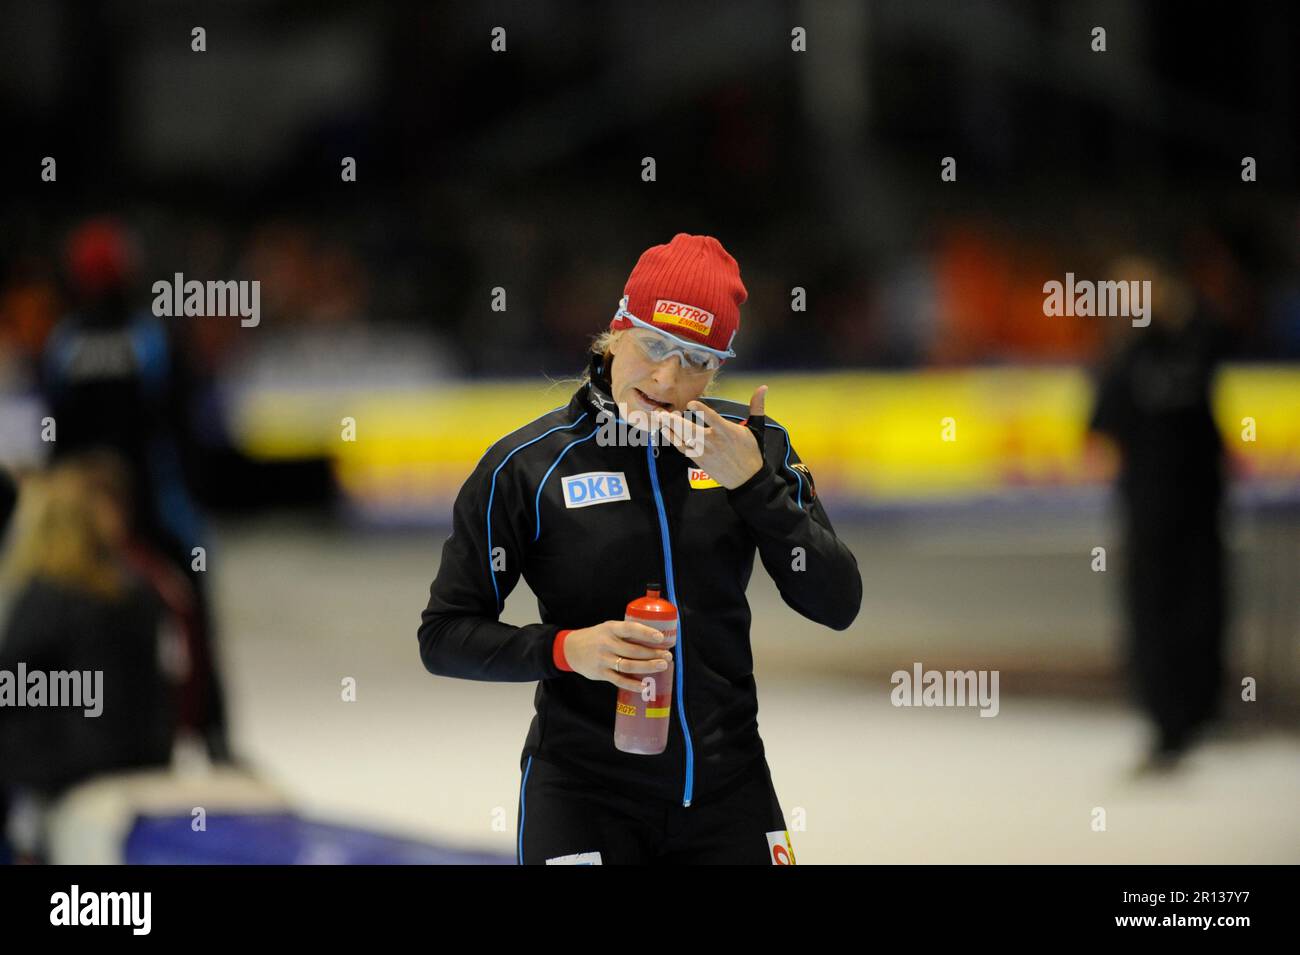 Anni Friesinger - Potsma, 1500m beim Essent ISU Welt Cup Eisschnelllauf 13.11.2009 in Heerenveen. Stock Photo